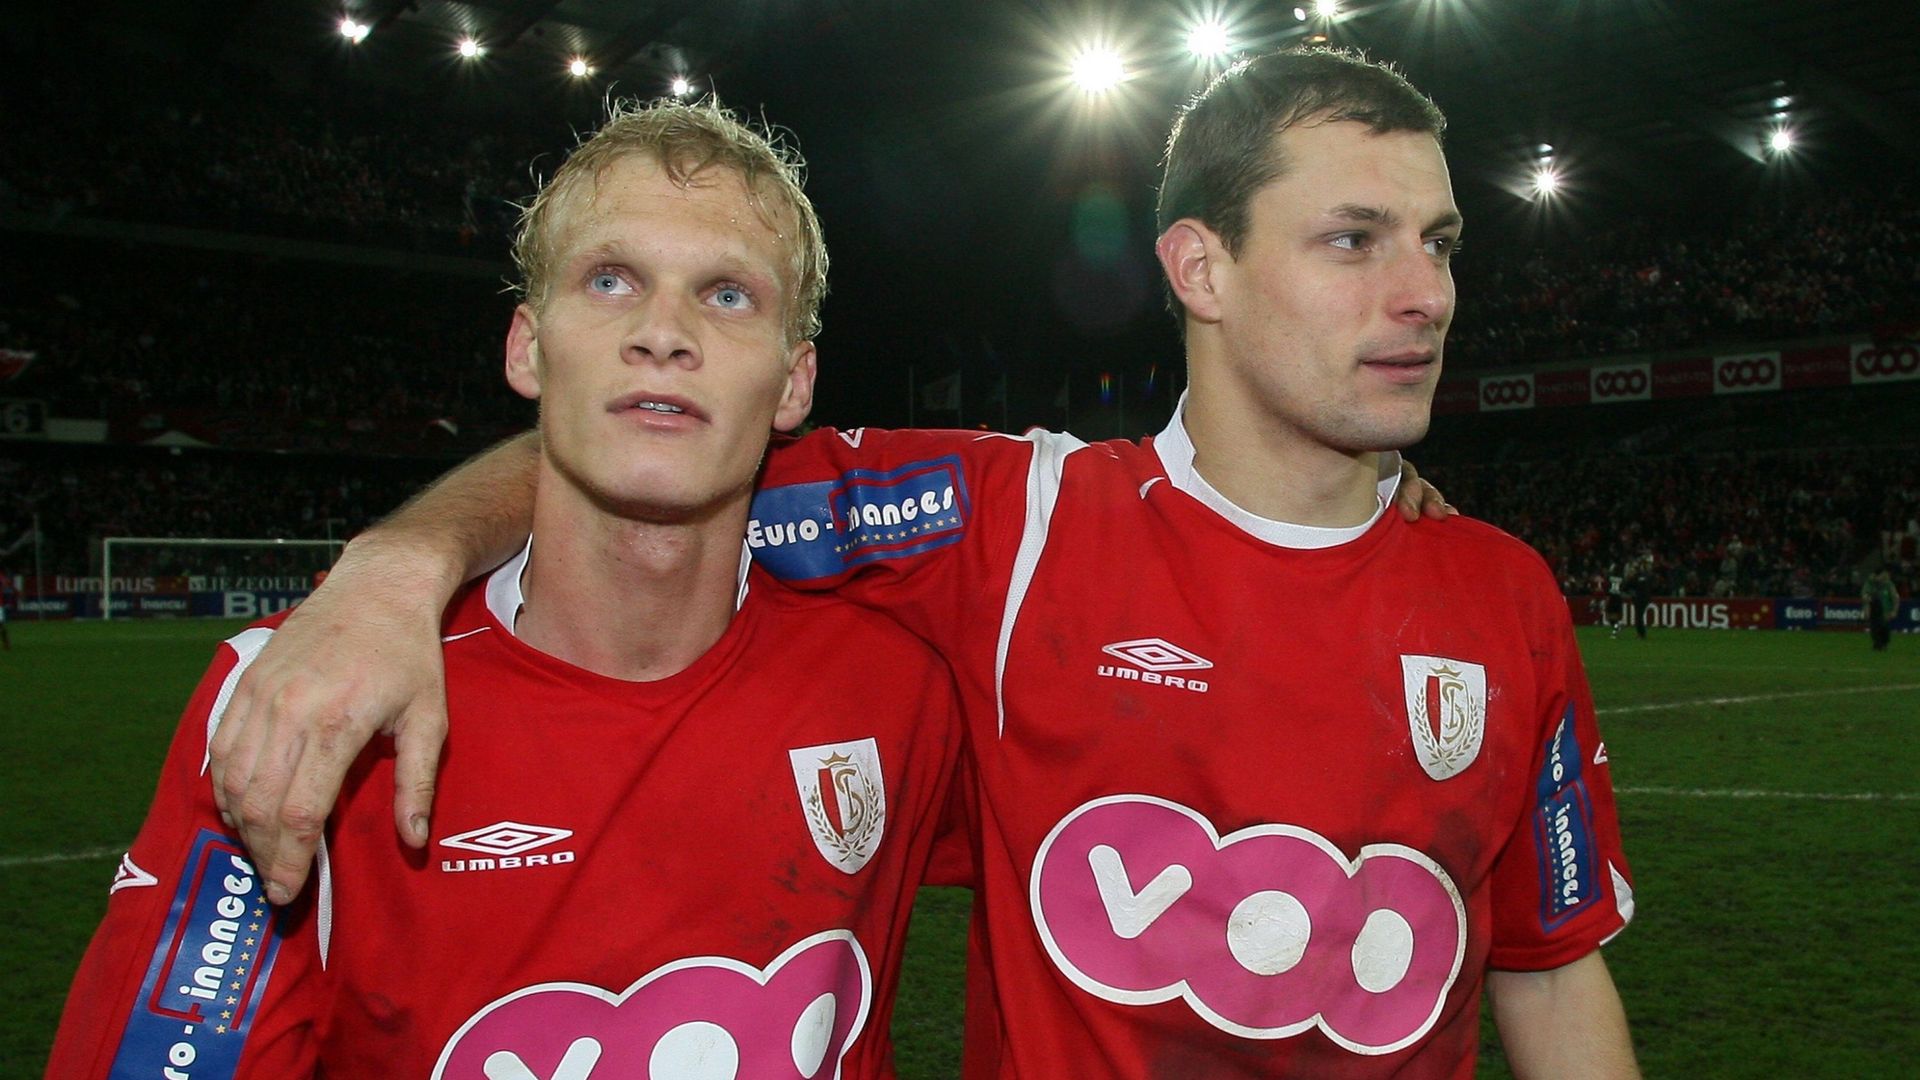 Karel Geraerts et Milan Jovanovic en rouche en 2007...